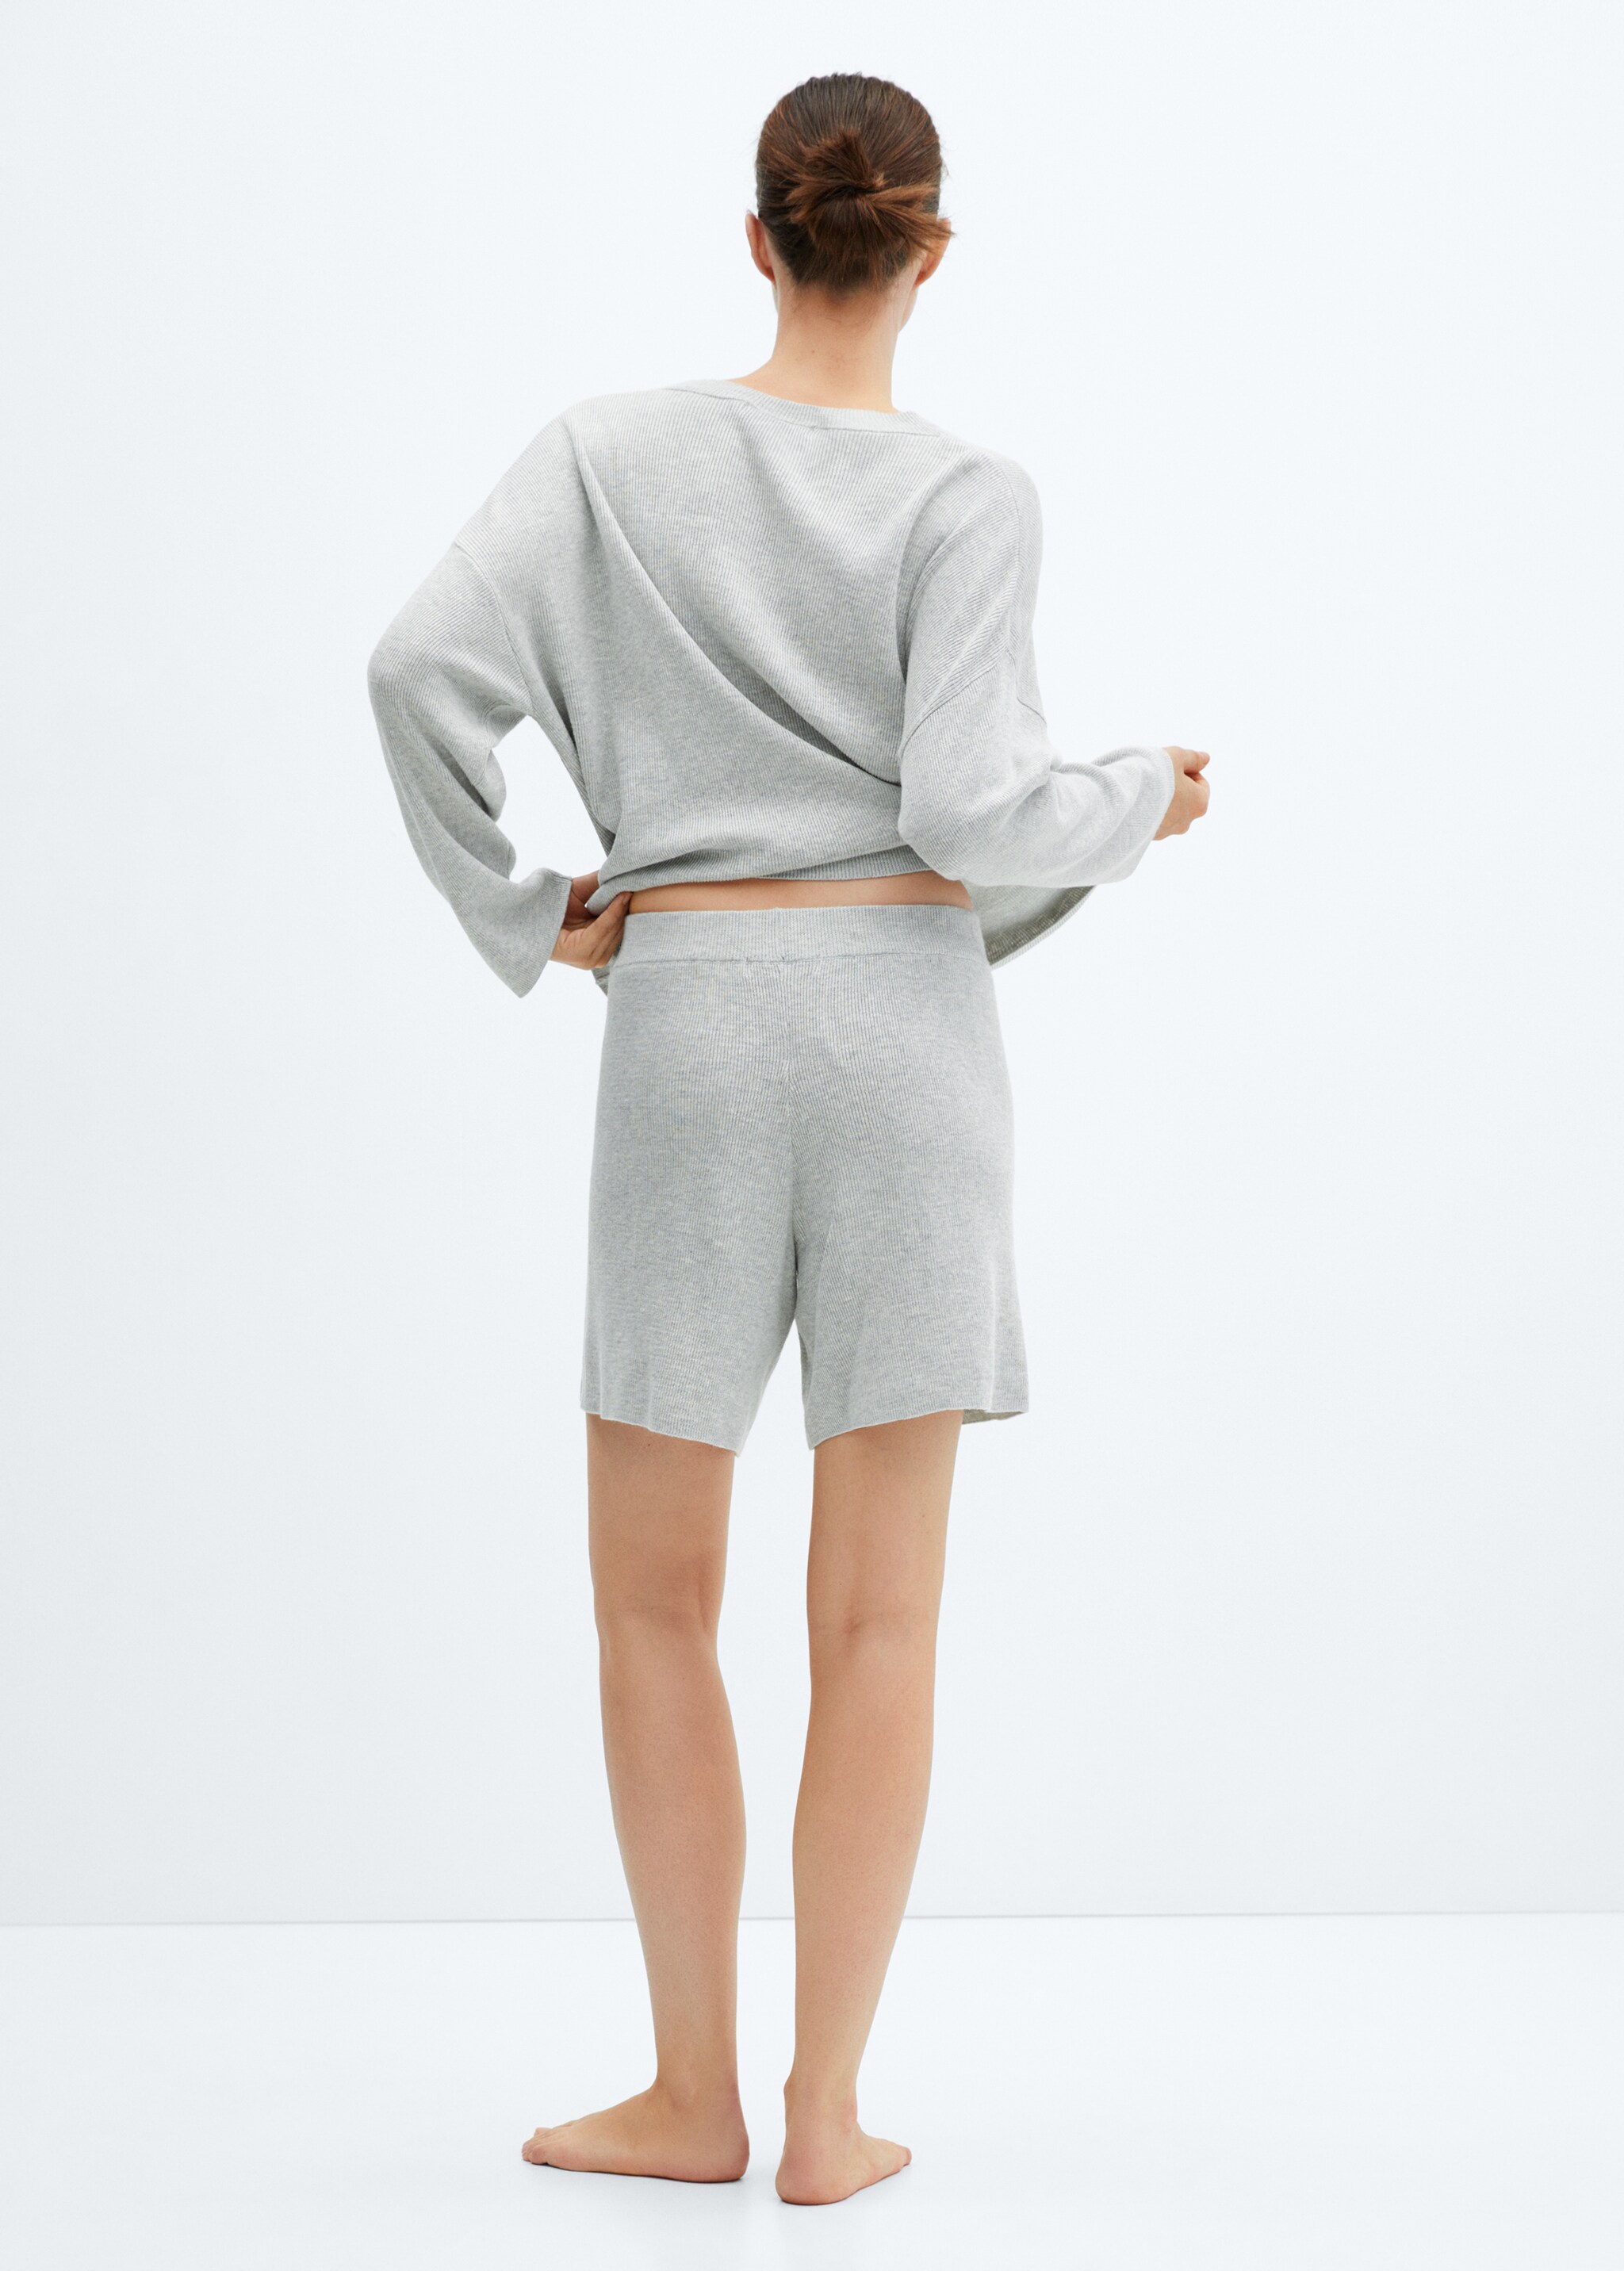 Пижамные шорты из трикотажа хлопок и лен - Обратная сторона изделия